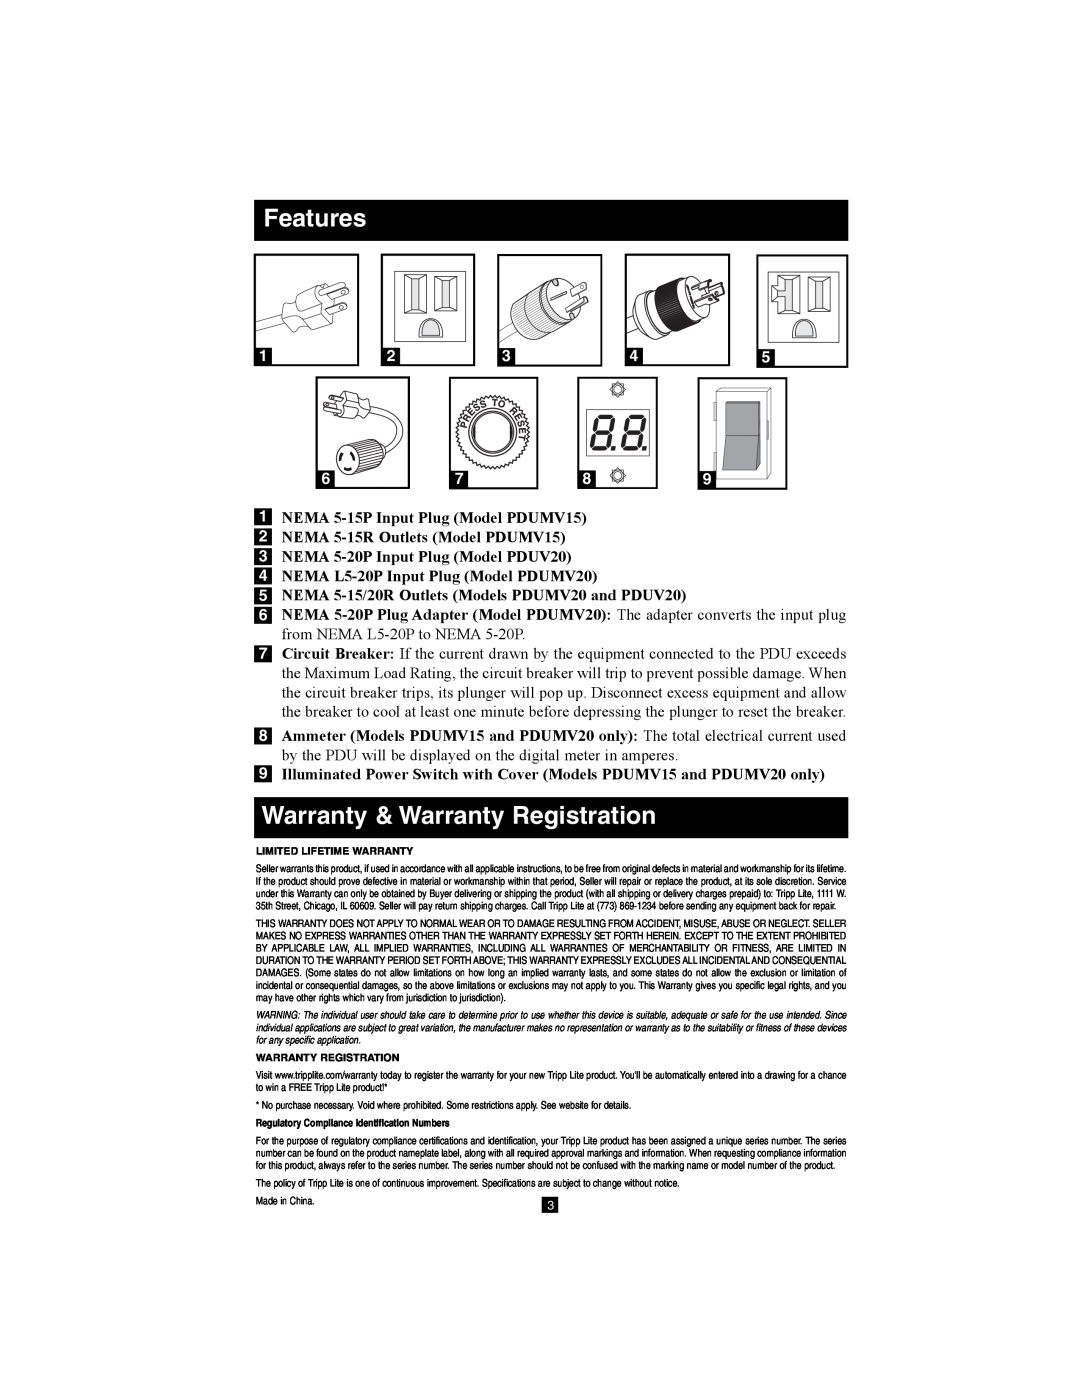 Tripp Lite PDUV20, PDUV15 owner manual Features, Warranty & Warranty Registration, Limited Lifetime Warranty 